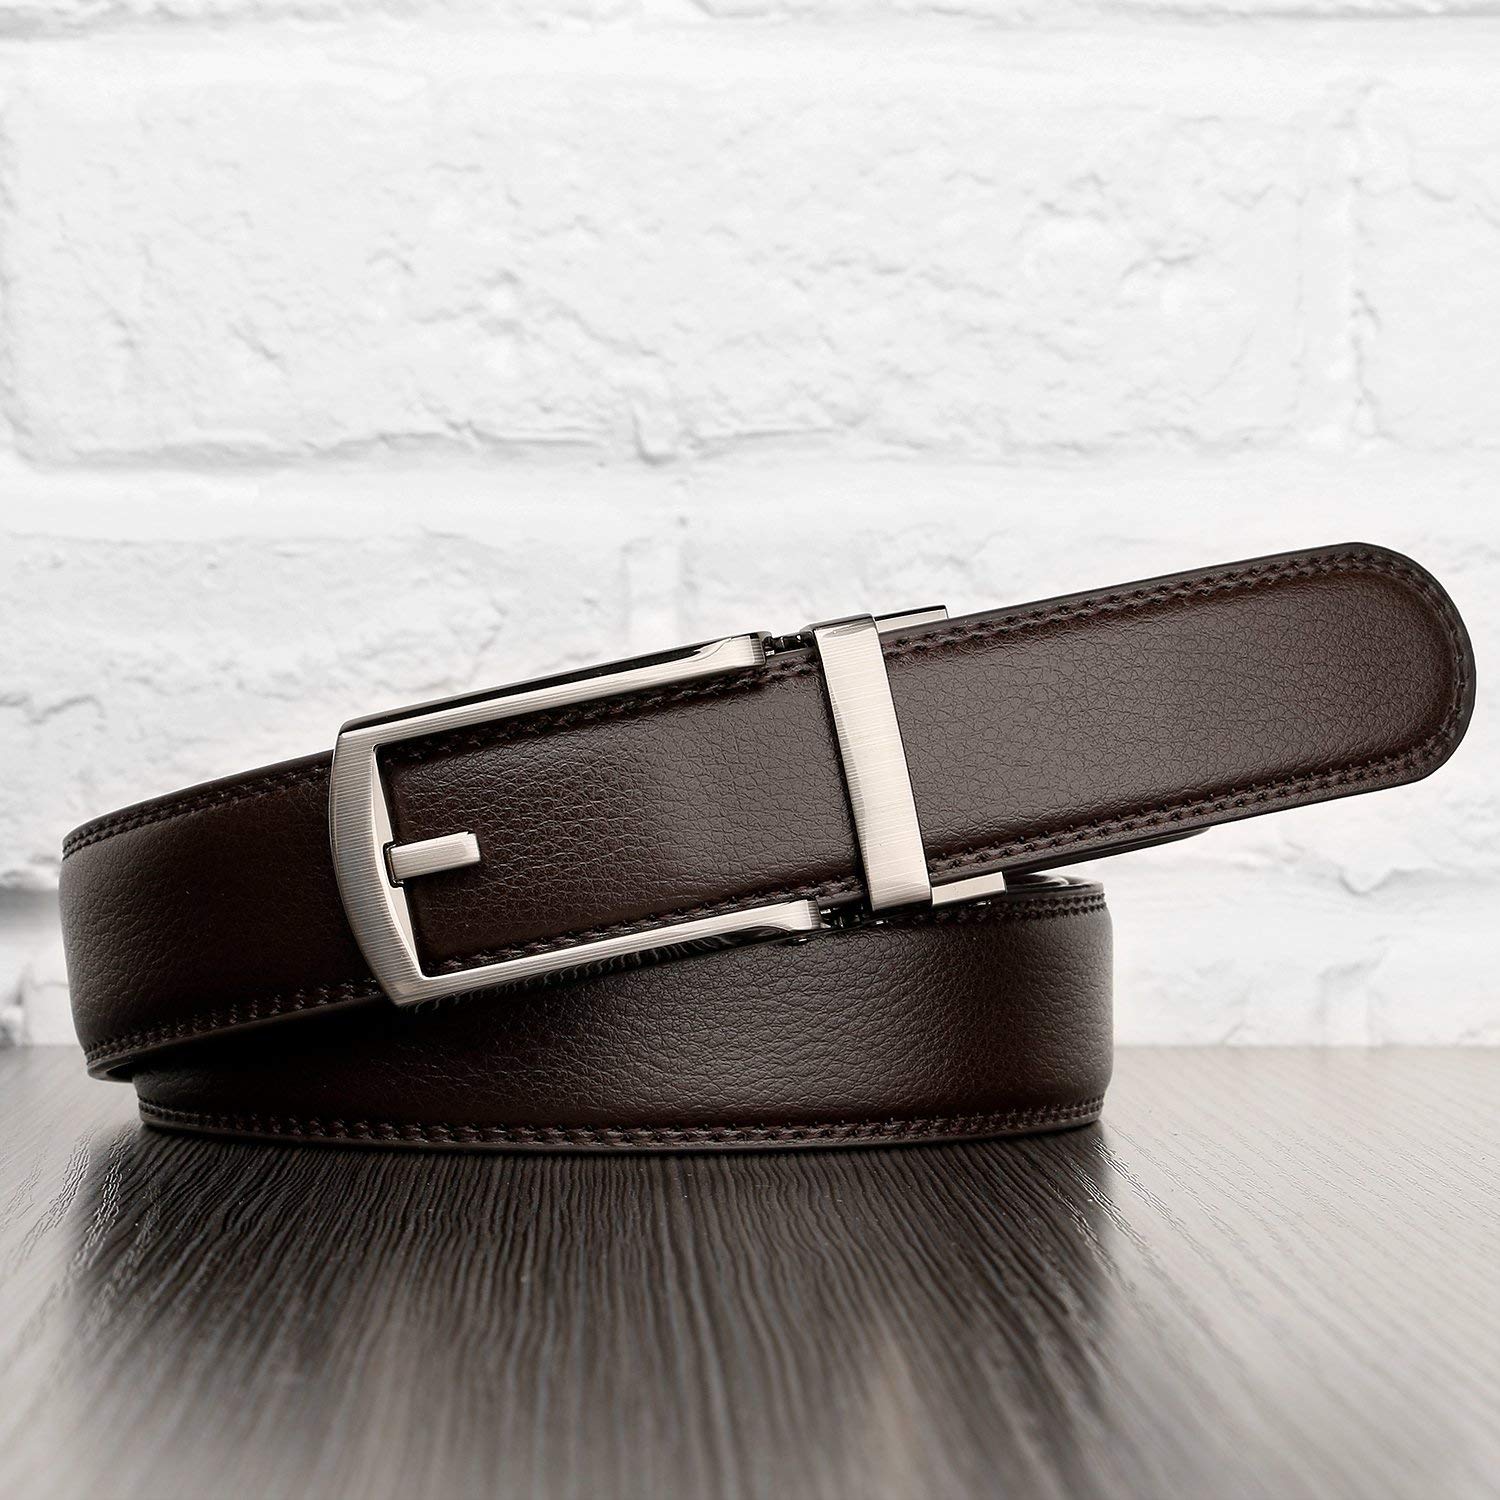 Jasgood Men's Leather Belt, Ratchet Dress Belt with Automatic Buckle Black 115cm(45Inch)